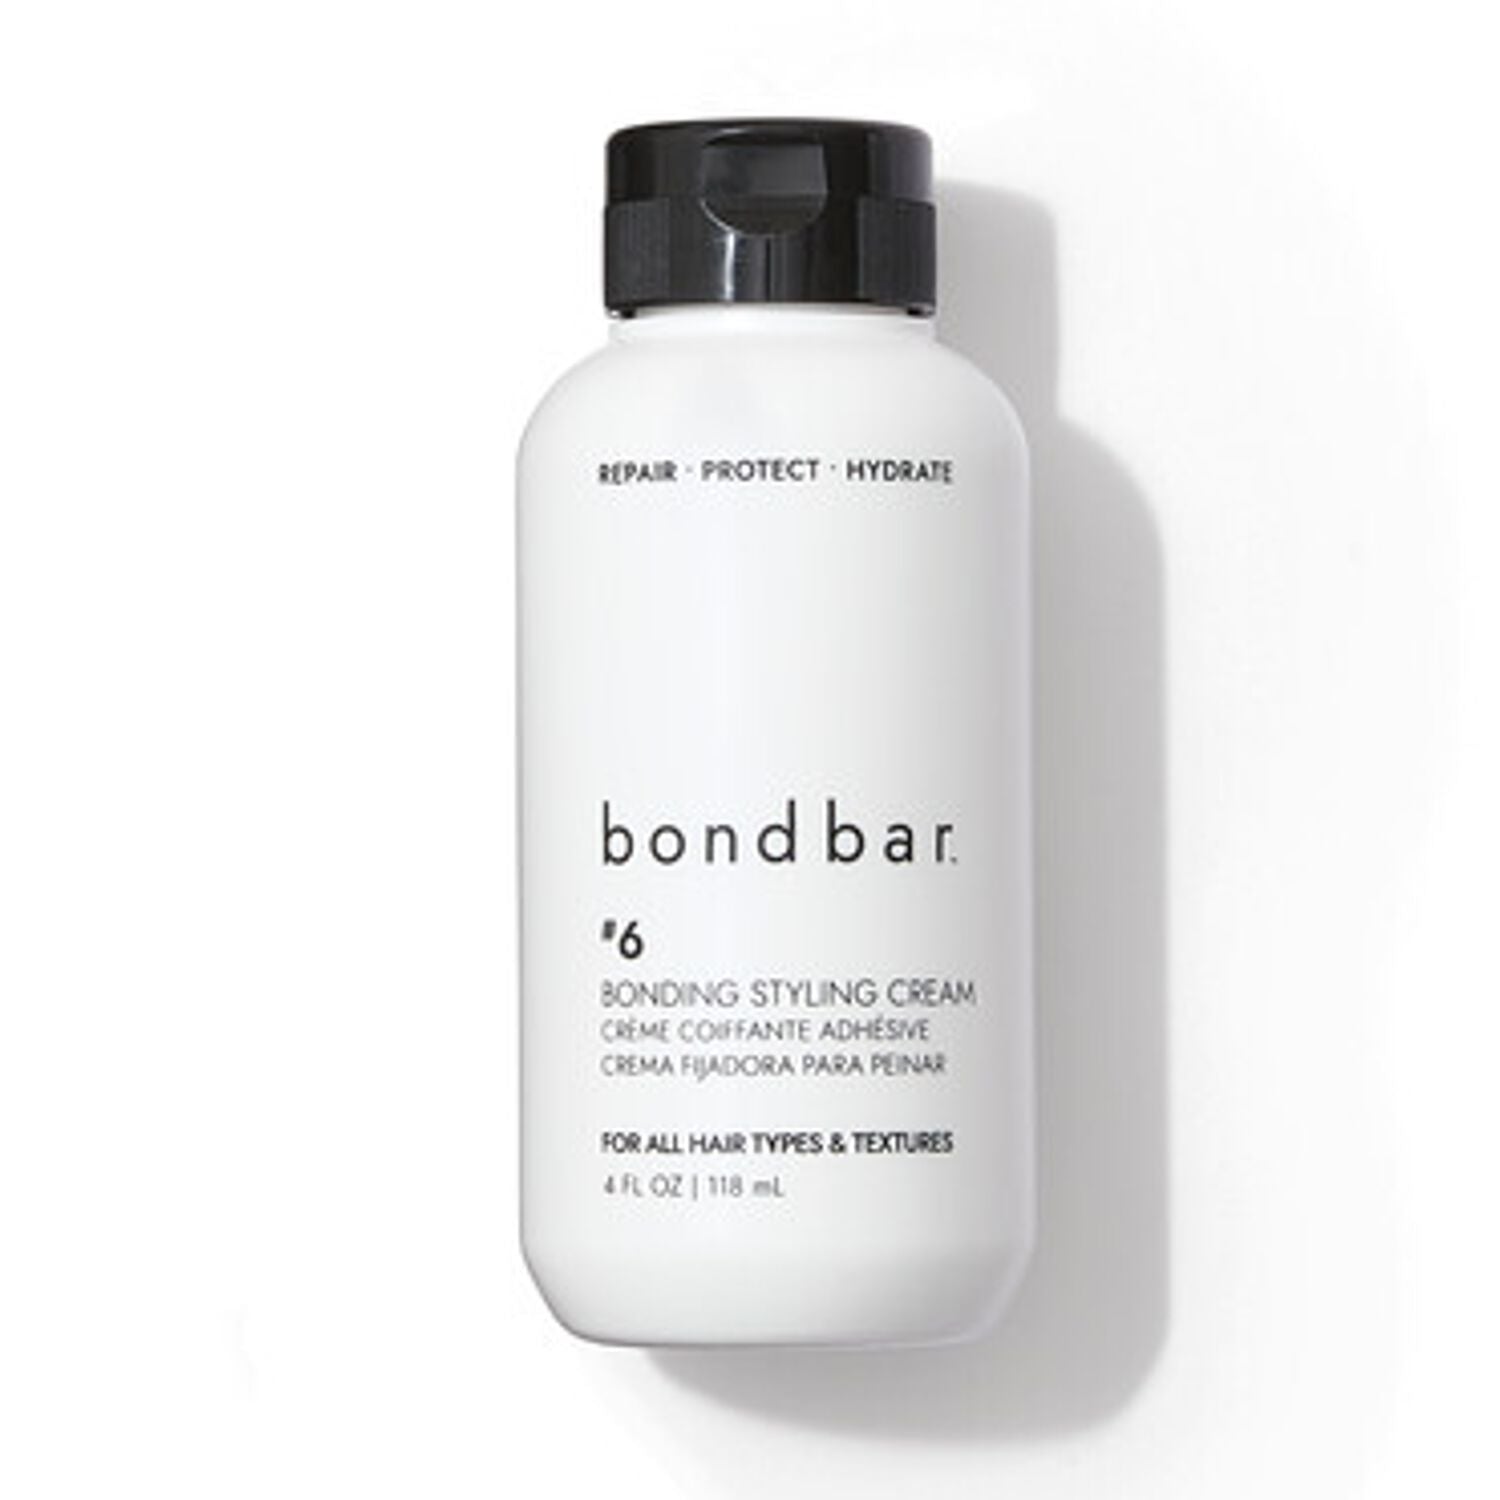 bondbar #6 Bonding Styling Cream